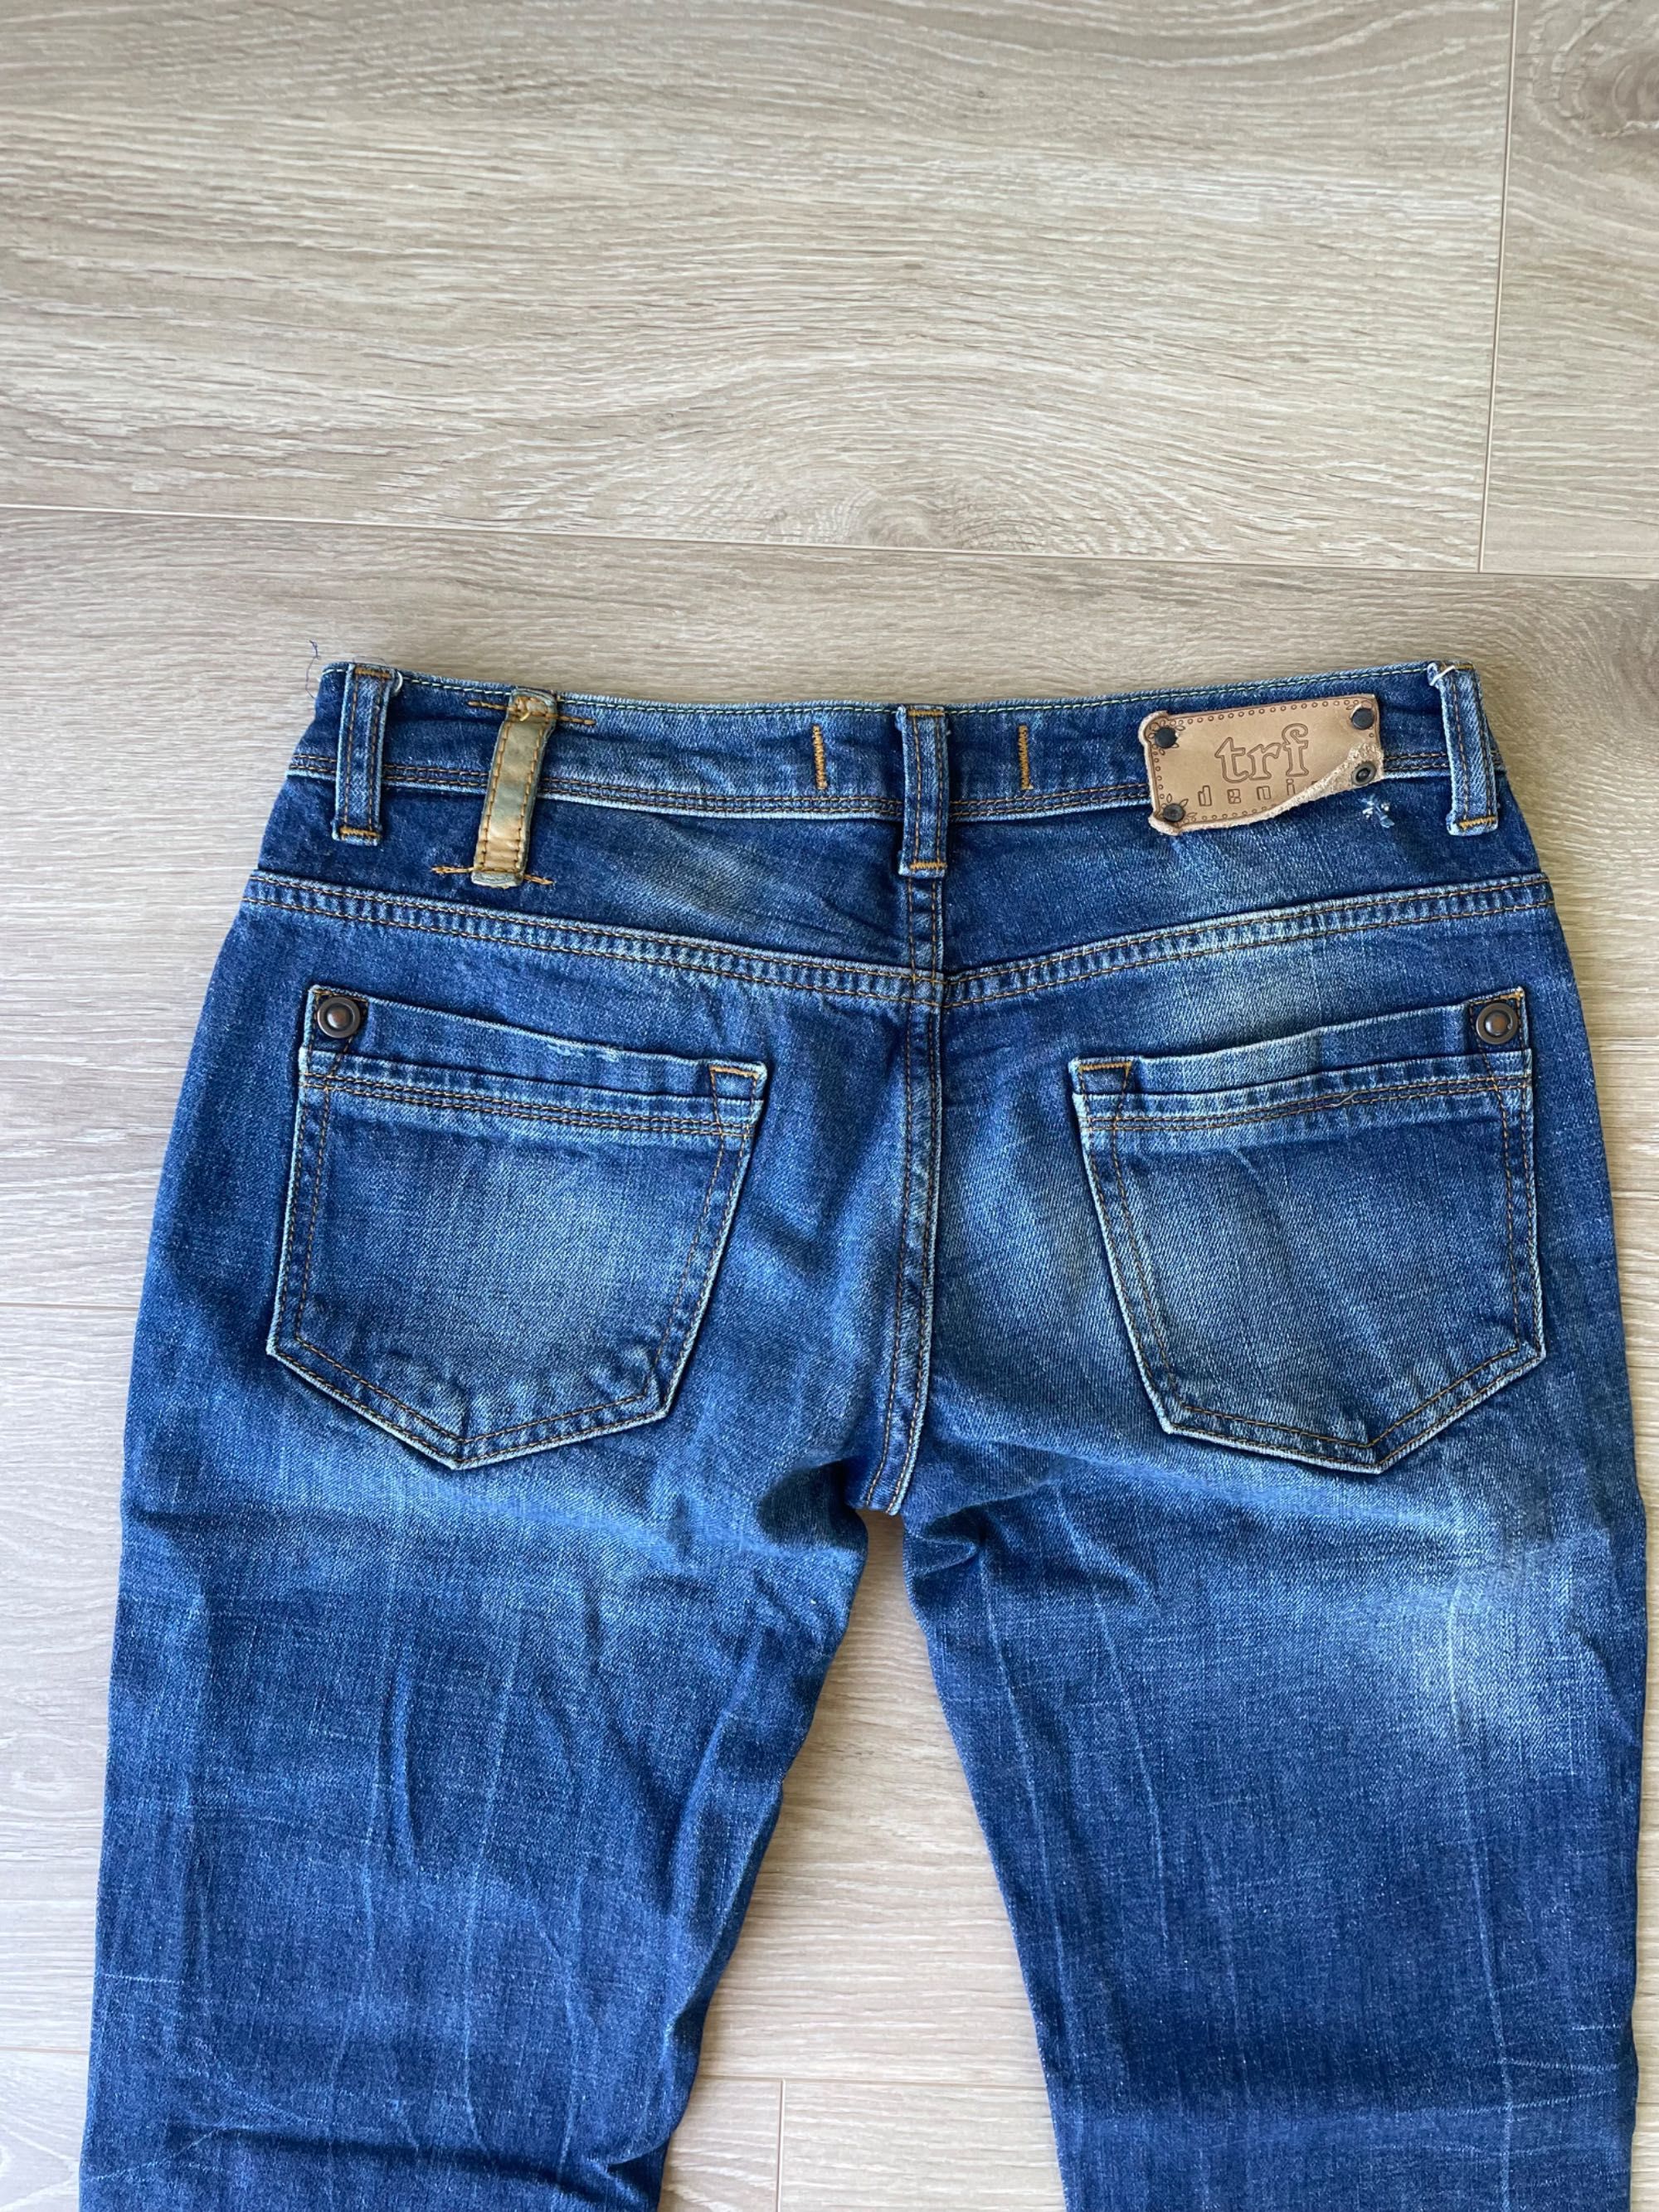 Spodnie jeansowe zara trf